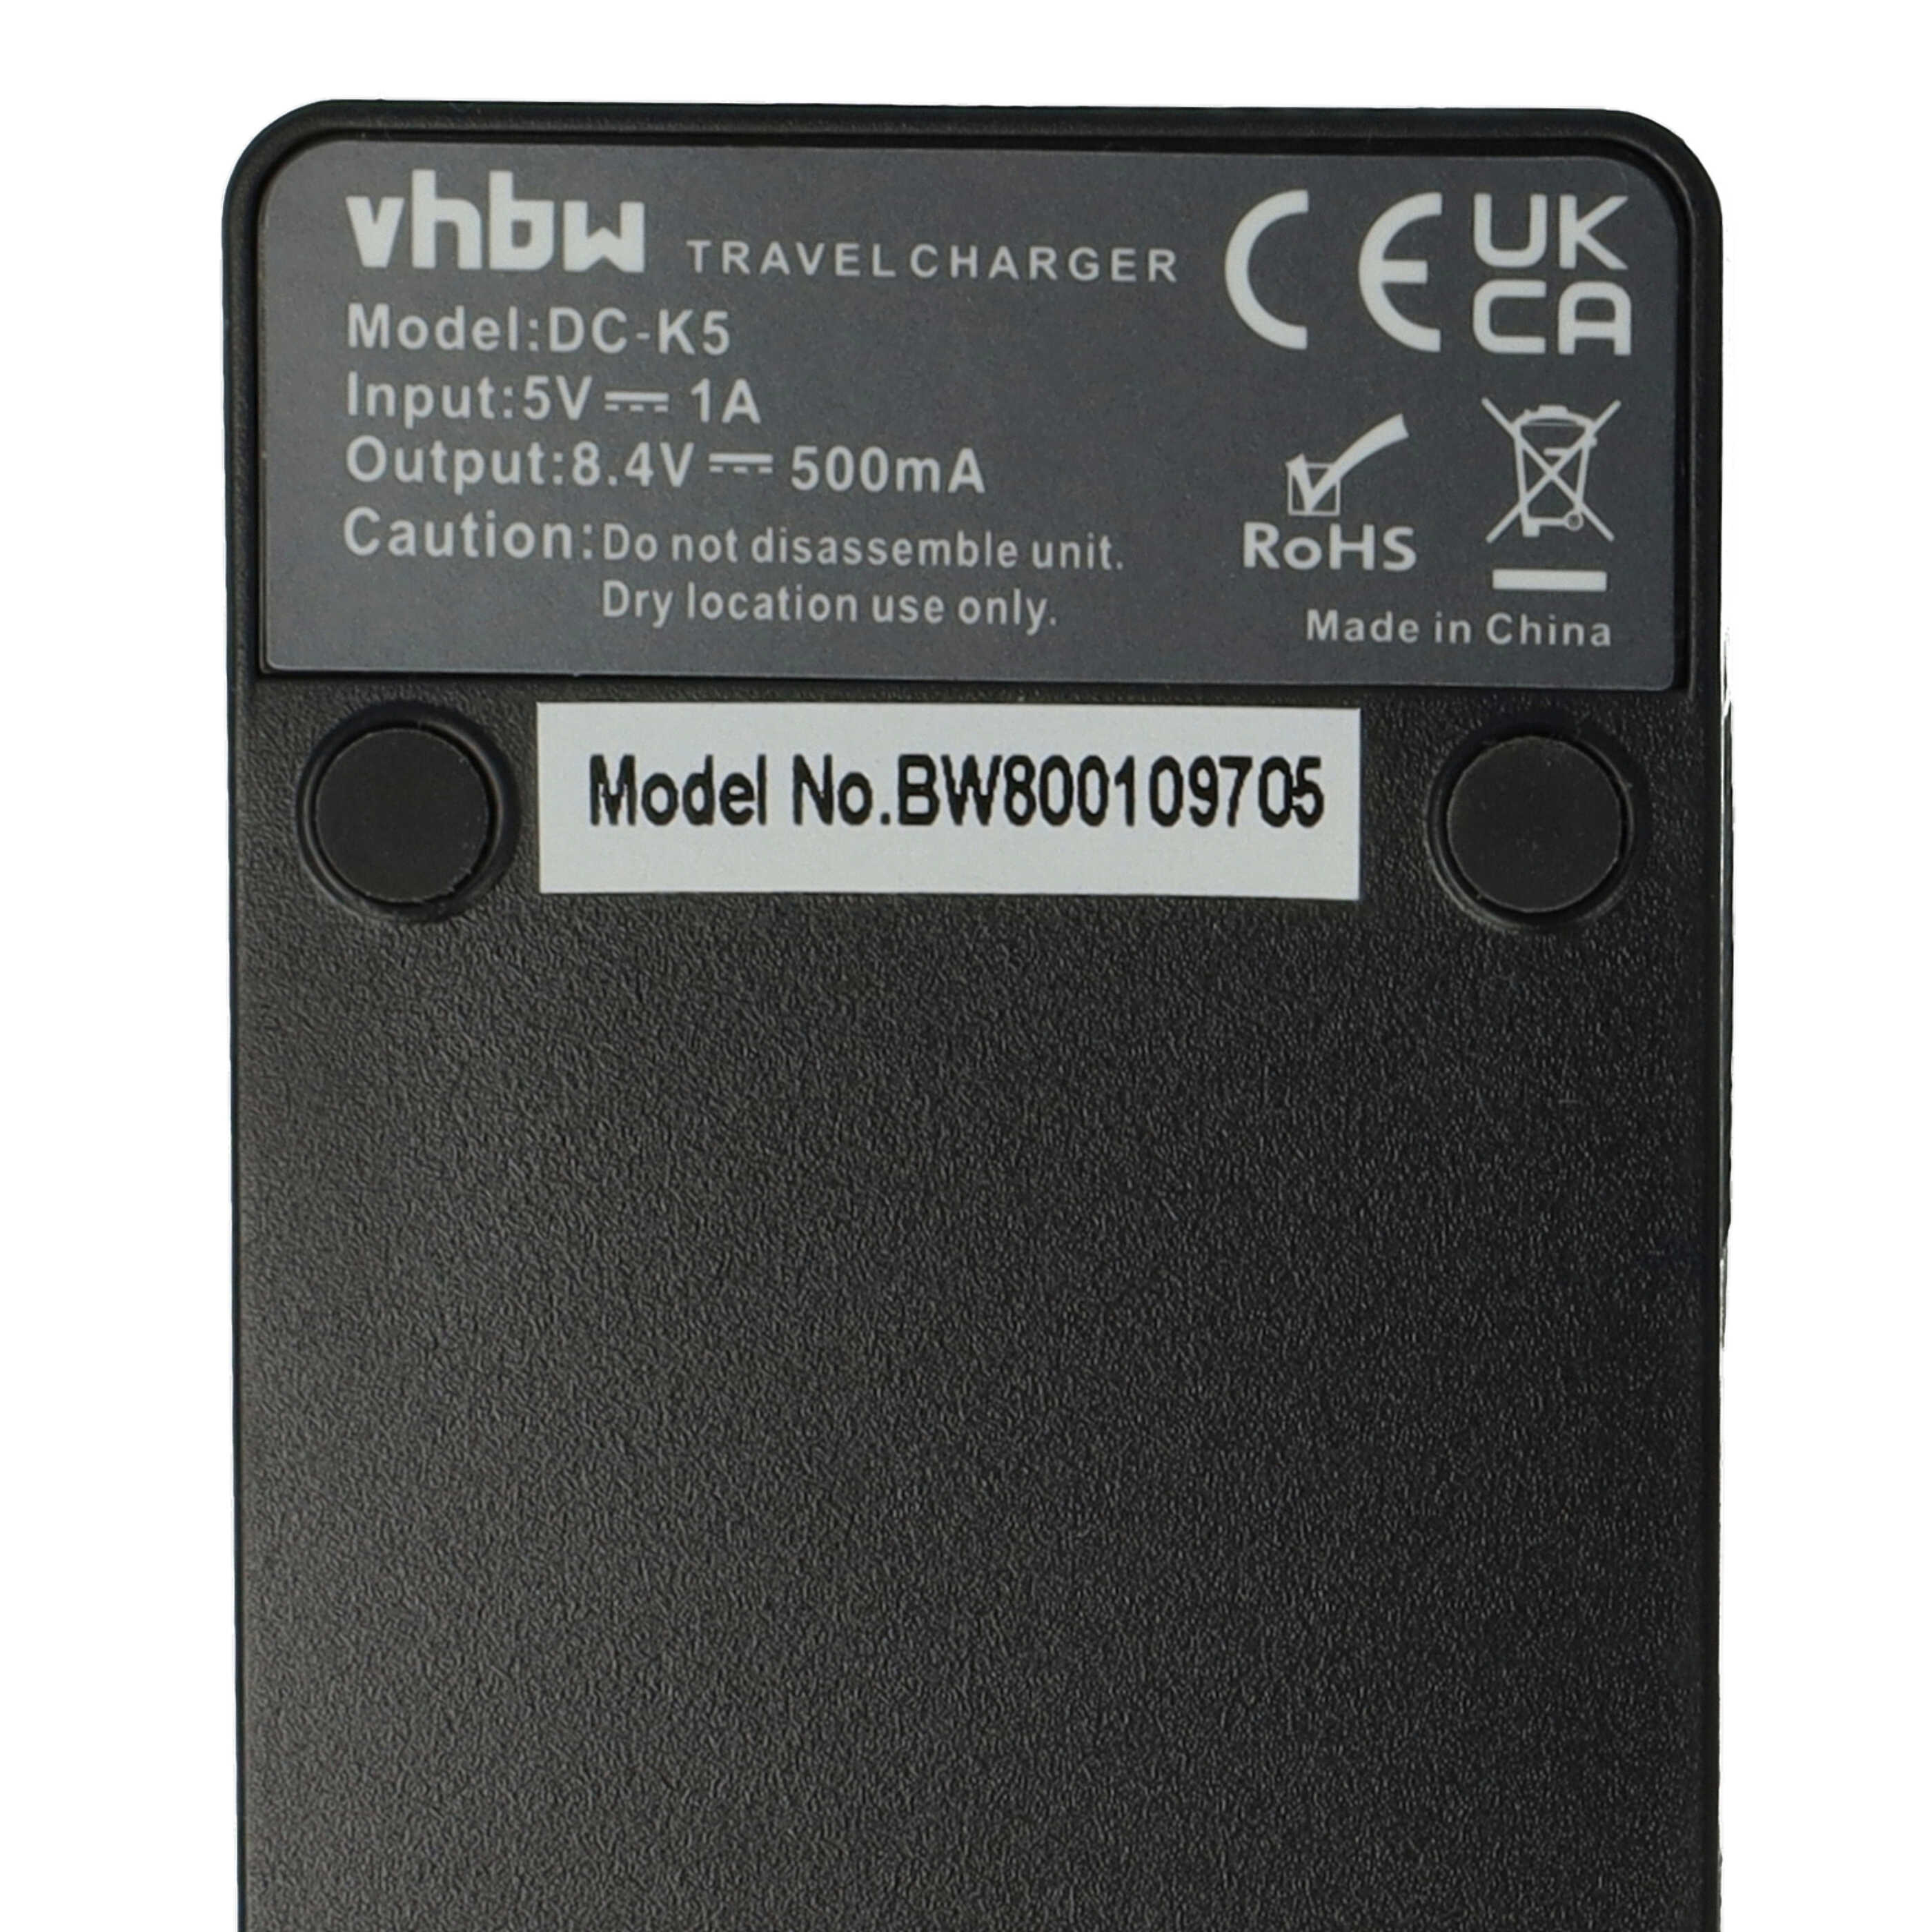 Chargeur pour appareil photo Canon BP-807 